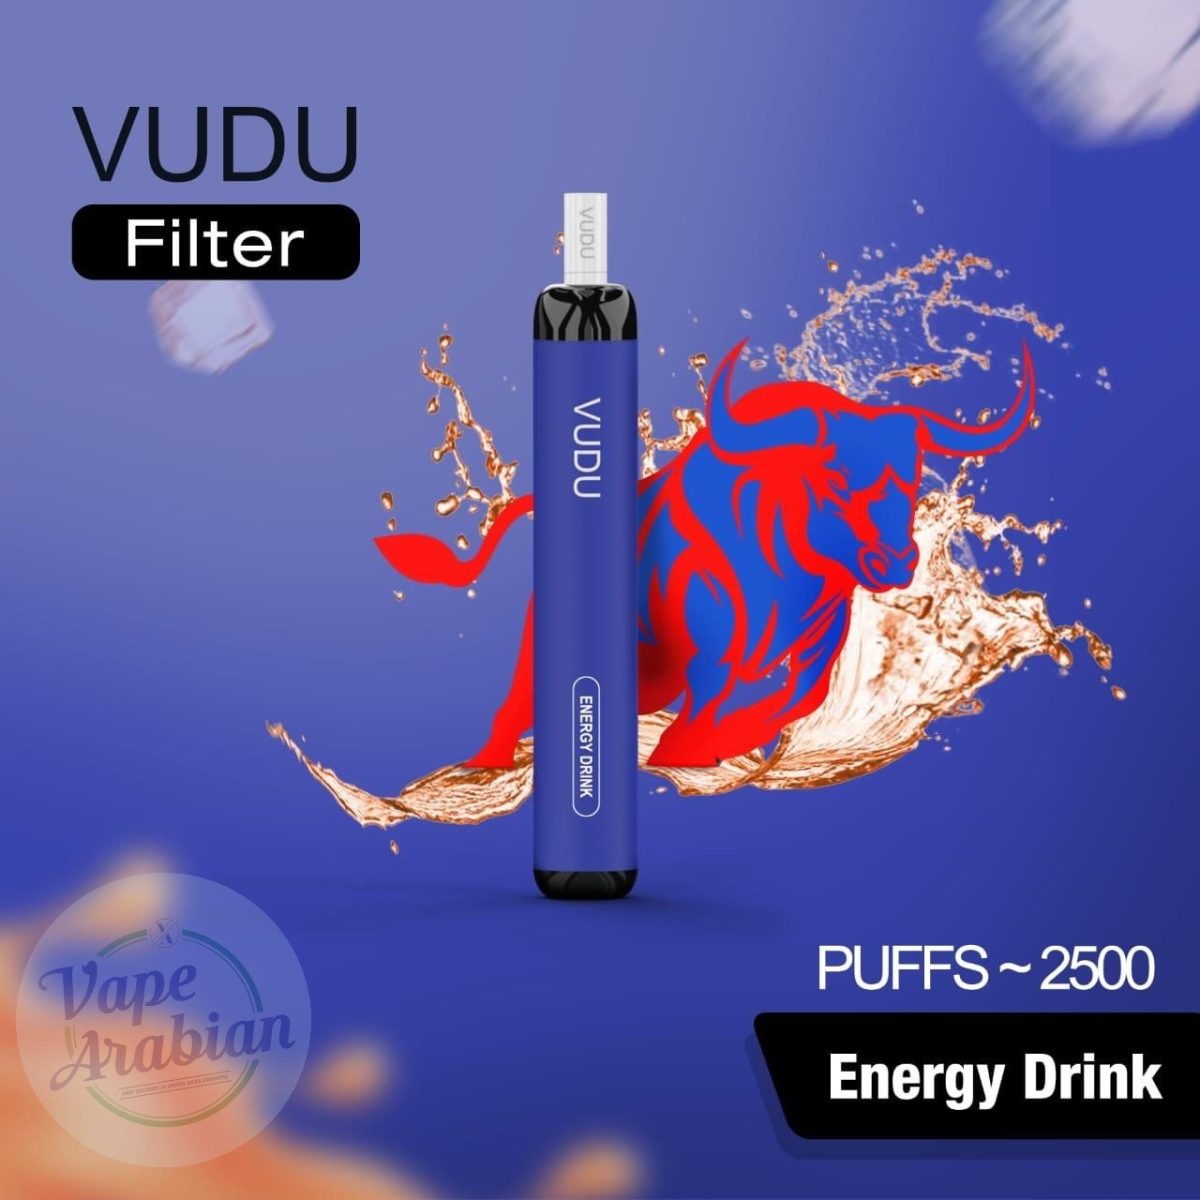 VUDU Filter Disposable 2500 Puffs- Energy Drink